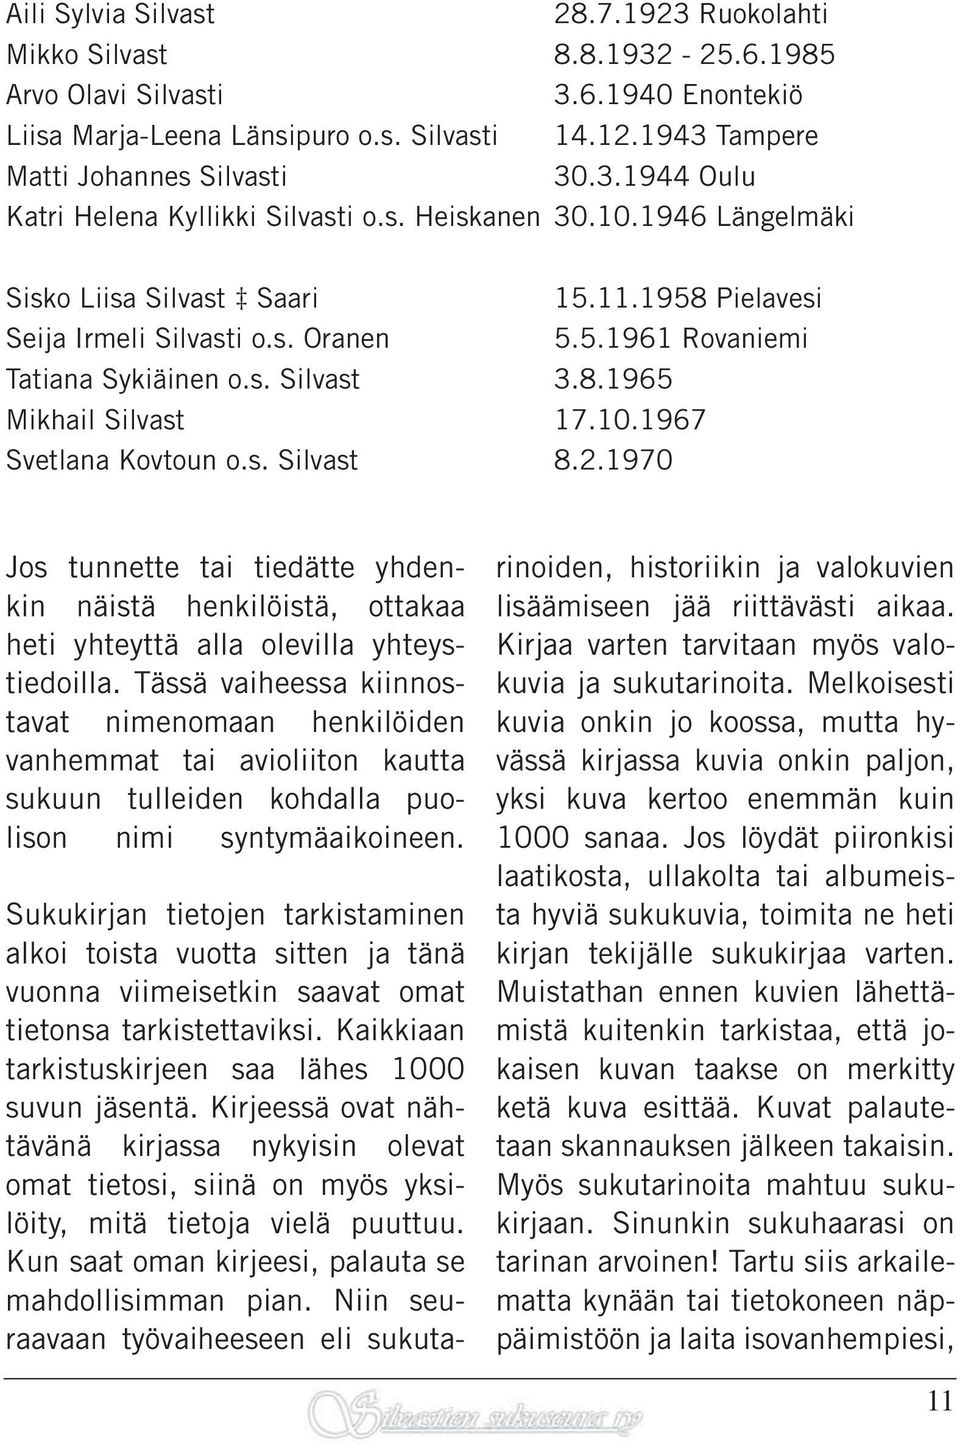 5.1961 Rovaniemi Tatiana Sykiäinen o.s. Silvast 3.8.1965 Mikhail Silvast 17.10.1967 Svetlana Kovtoun o.s. Silvast 8.2.